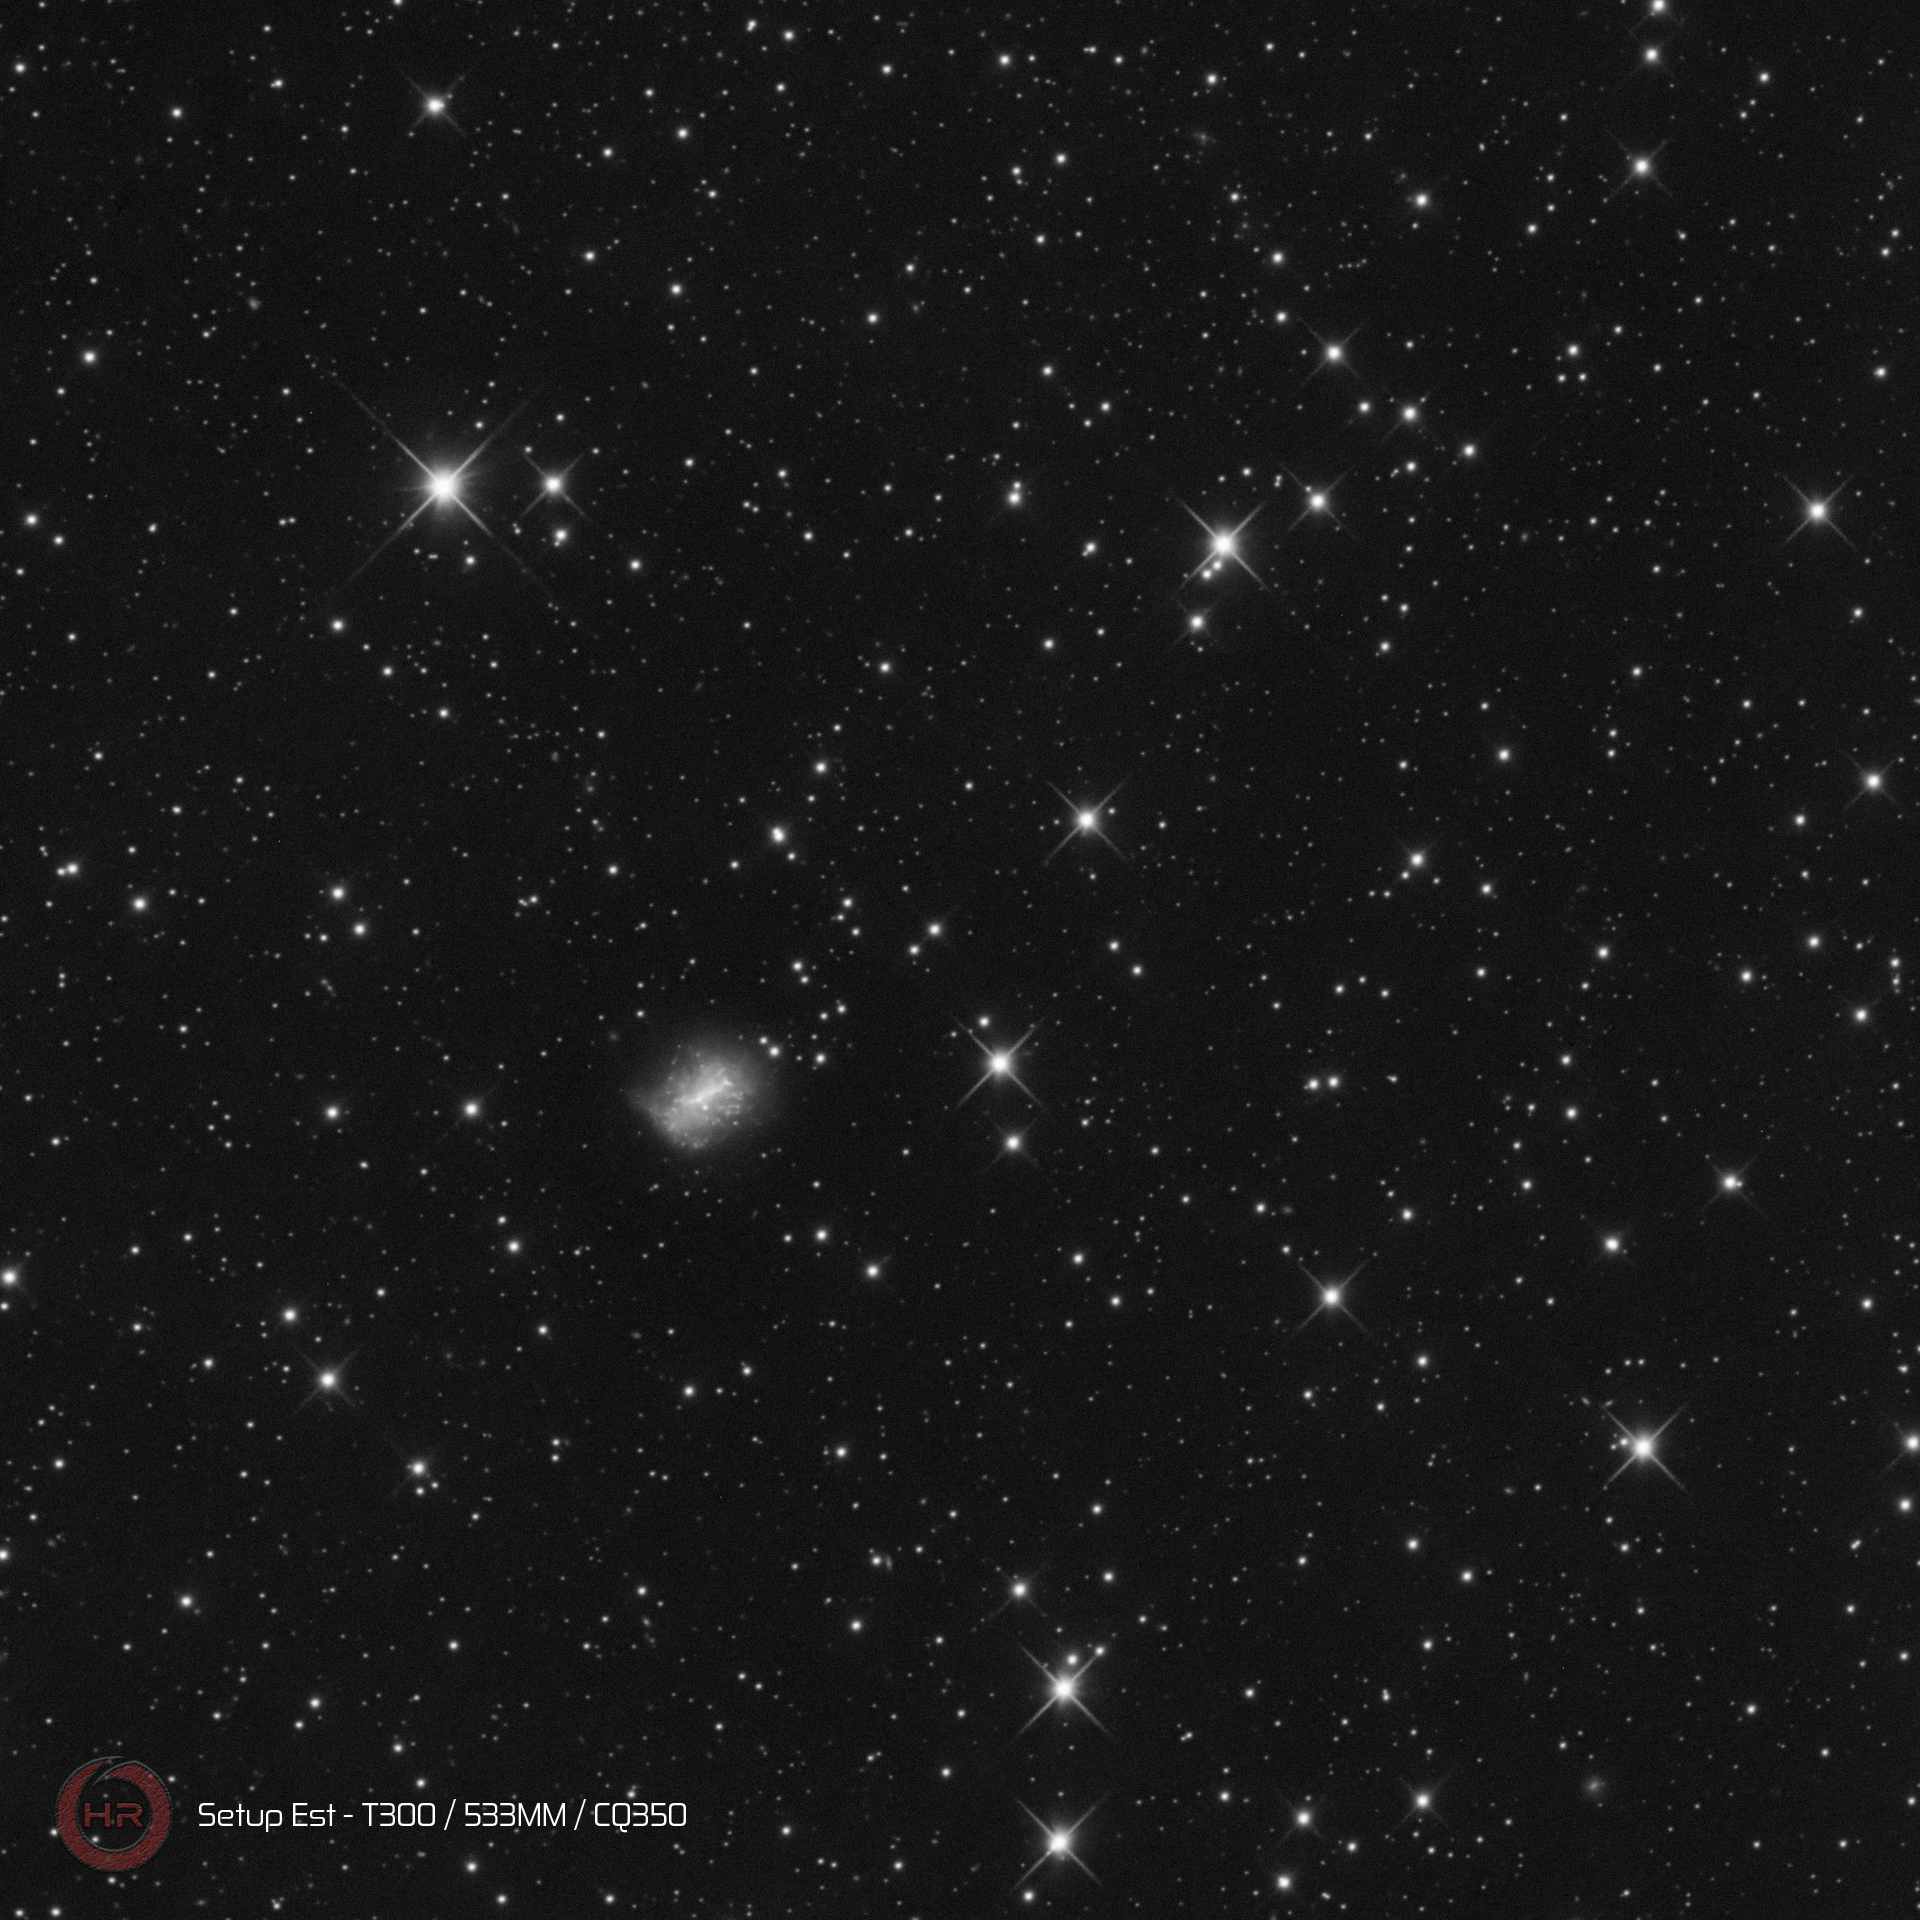 64fc355109737_r_pp_NGC7292Peg40x60s.jpg.792b67d1afee22c25c43941bb53d09d9.jpg